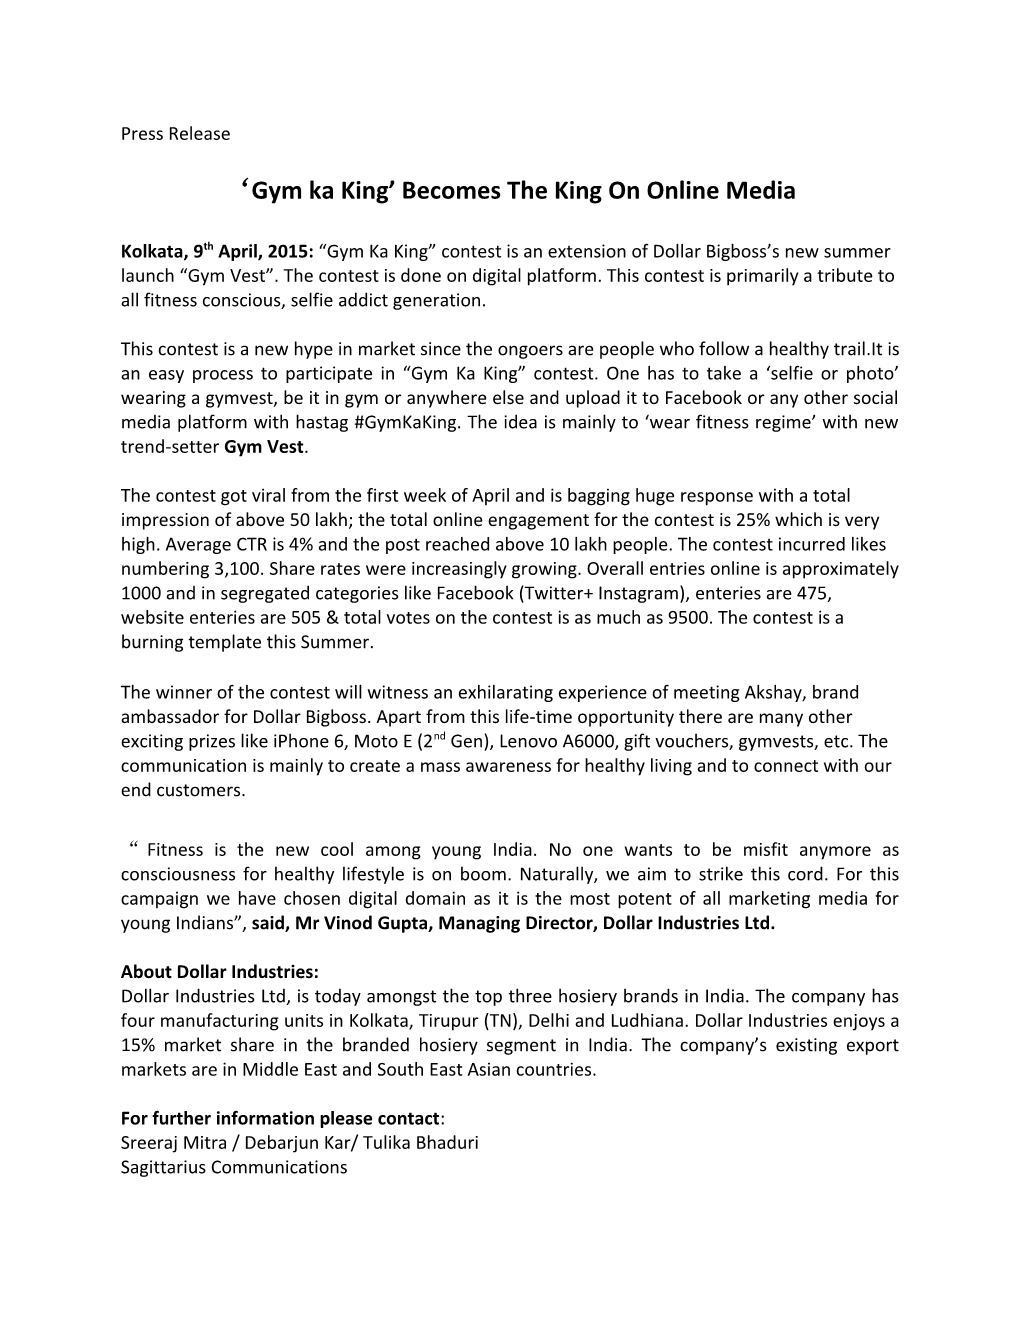 Gym Ka King Becomes the King on Online Media